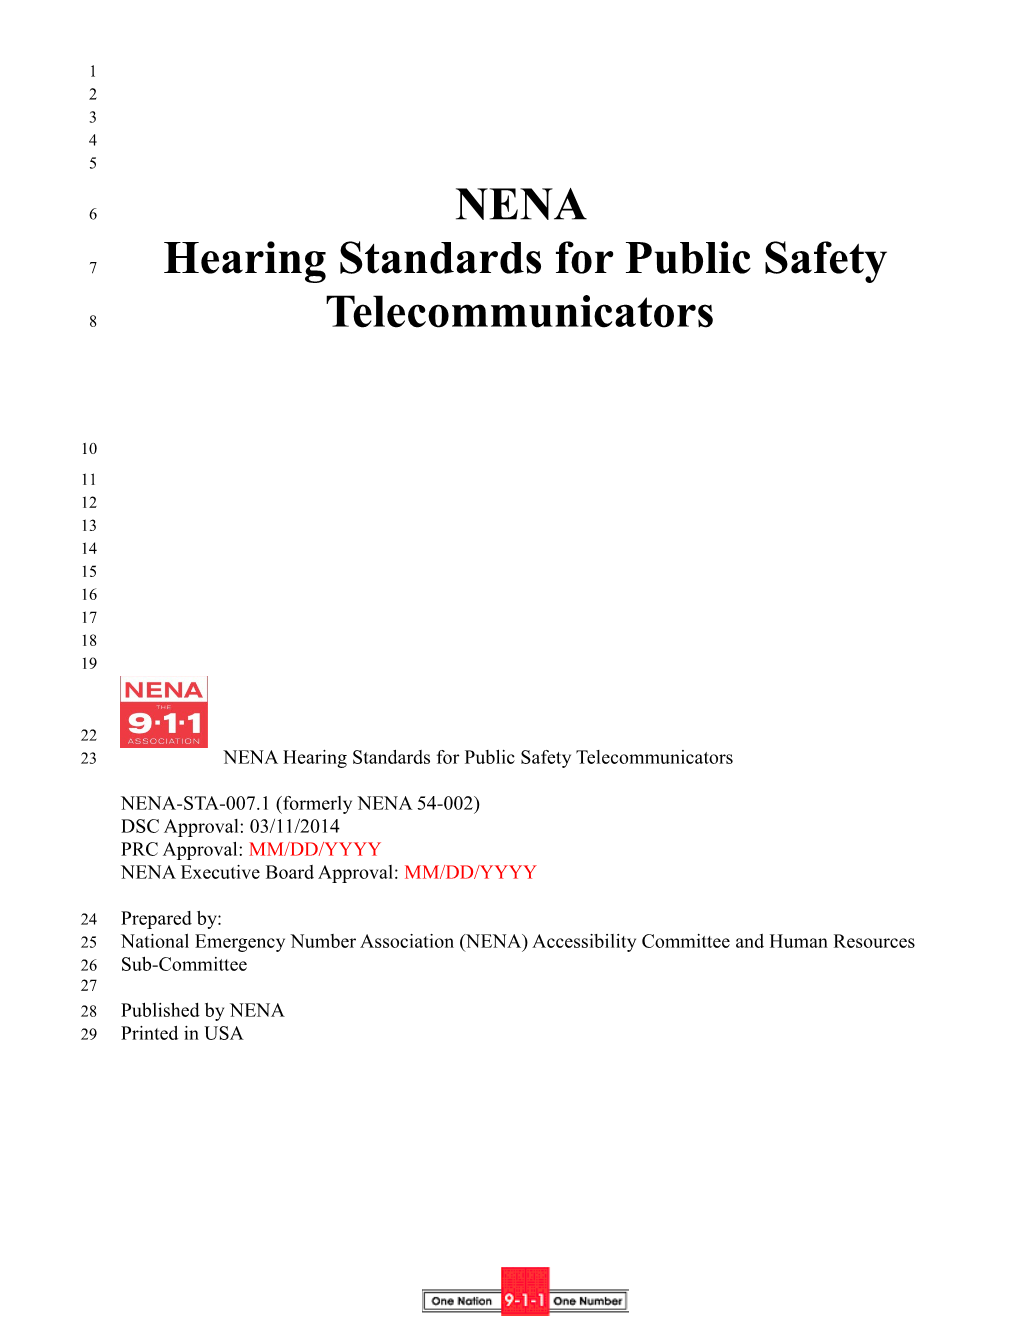 NENA-STA-007.1 (Formerly NENA 54-002)